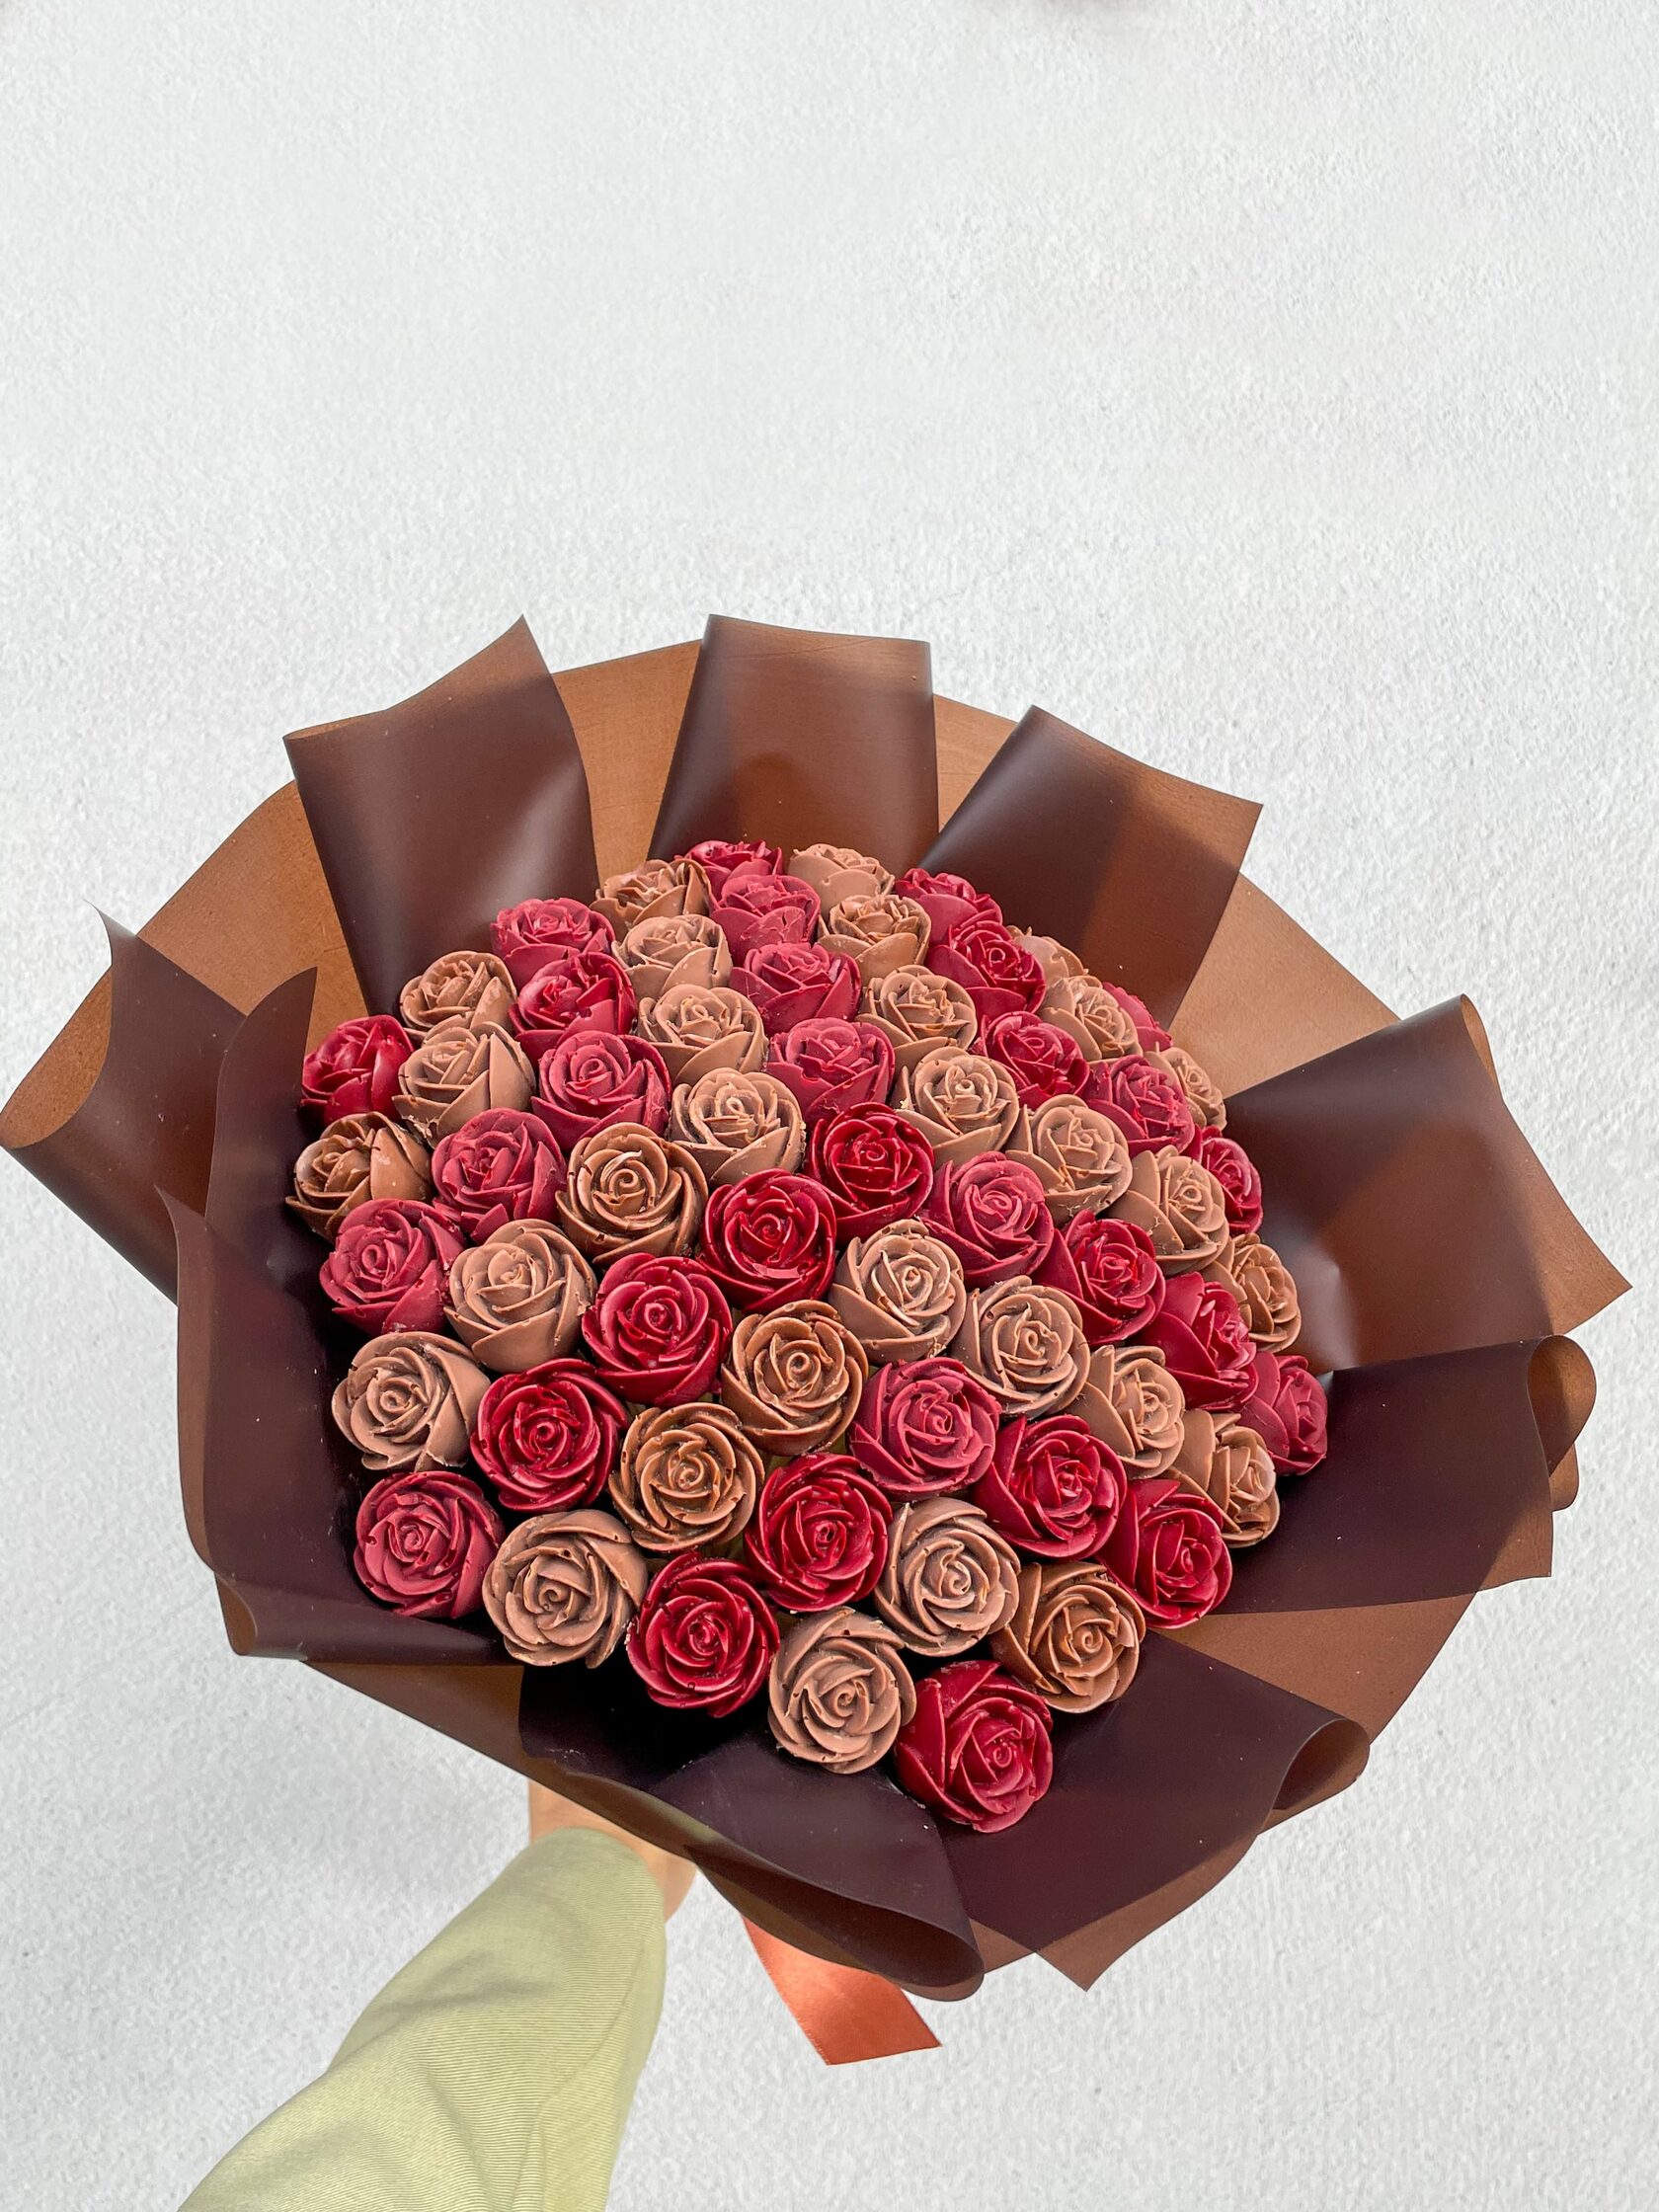 Букет «Розы молочный шоколад» - M (55 шоколадных роз) букет из шоколада alpen gold орео